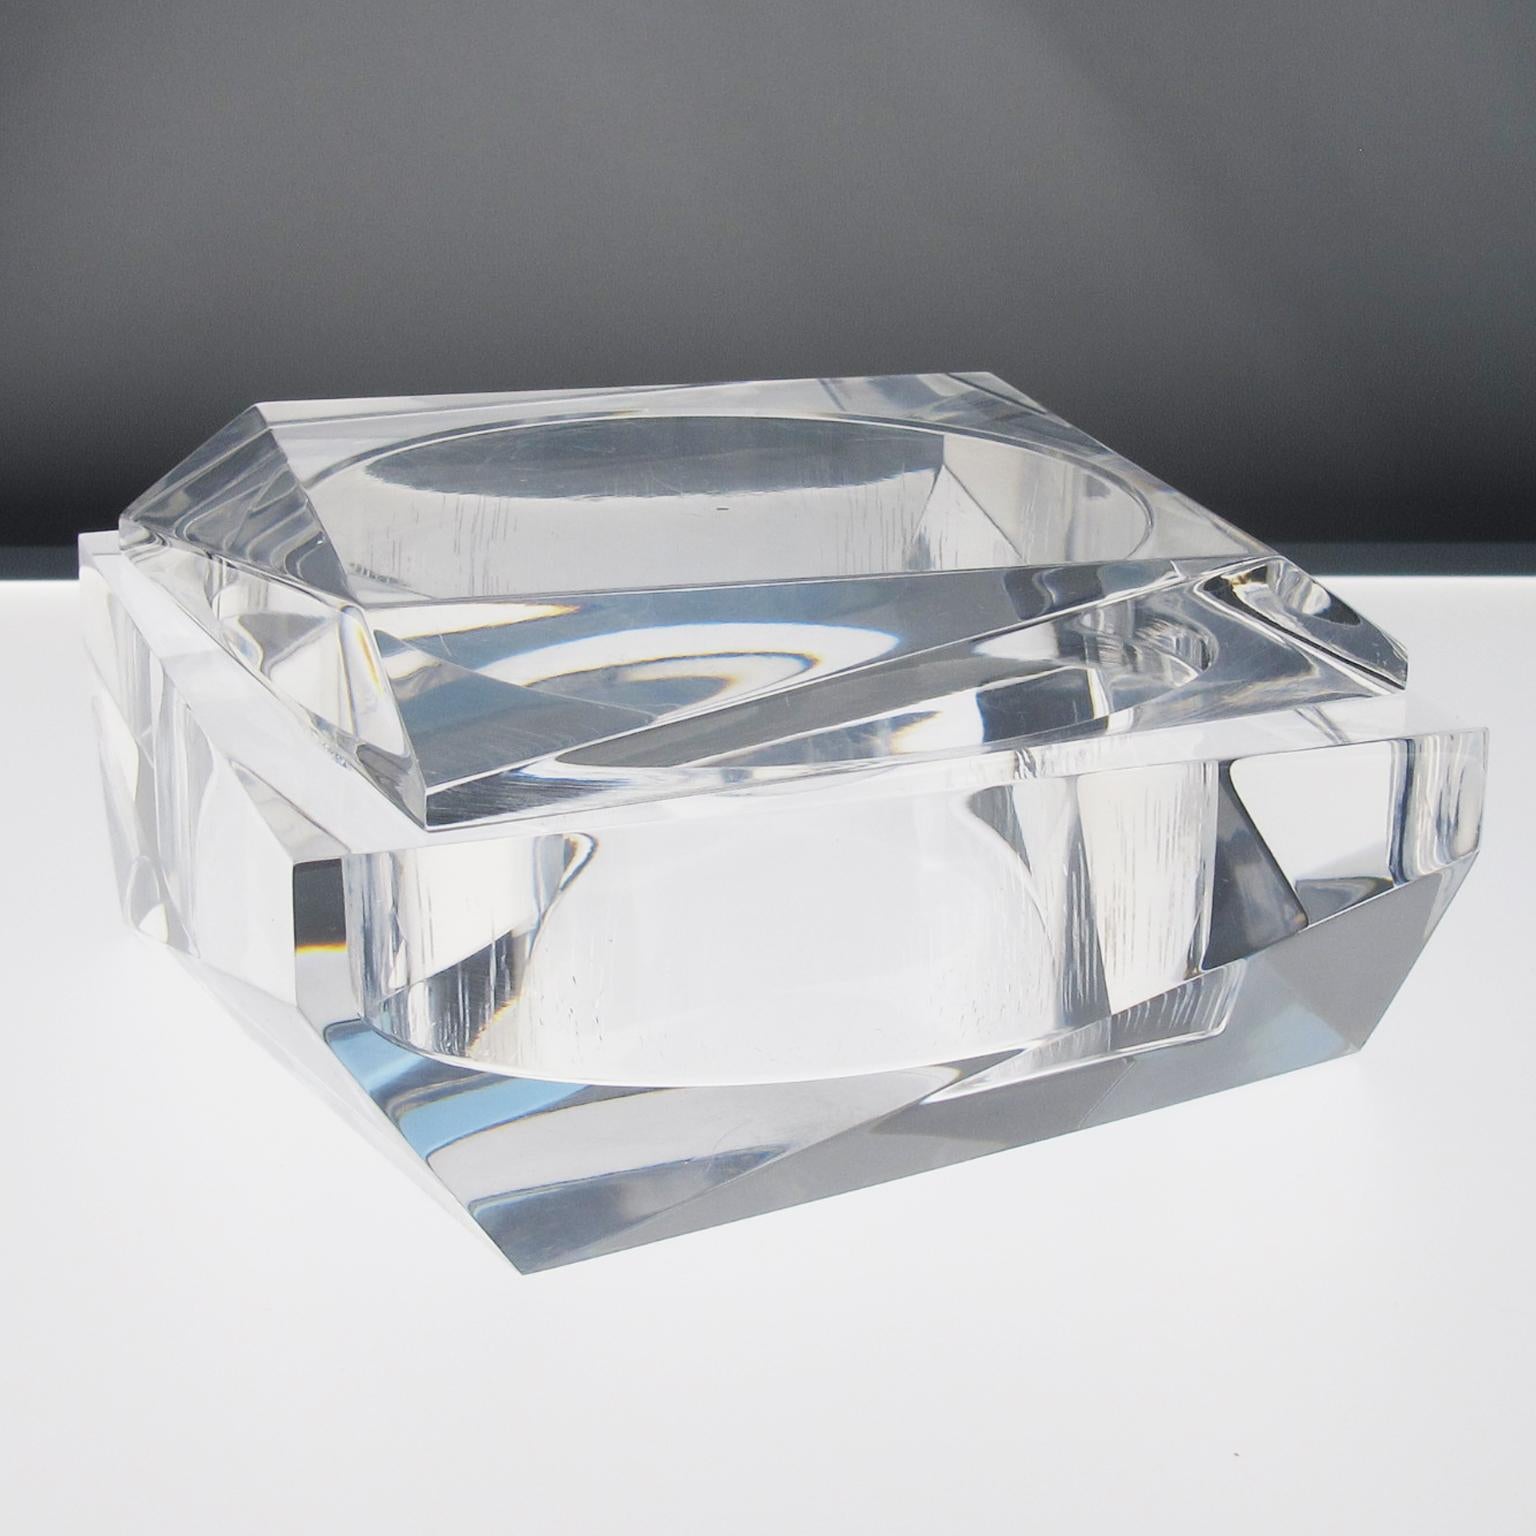 Diese atemberaubende geometrische Schmuckdose mit Deckel aus Lucite, die in den 1960er Jahren hergestellt wurde, hat eine modernistische Form mit einem unglaublichen geschnitzten prismatischen Design. Die Box ist aus kristallklarem Lucite oder